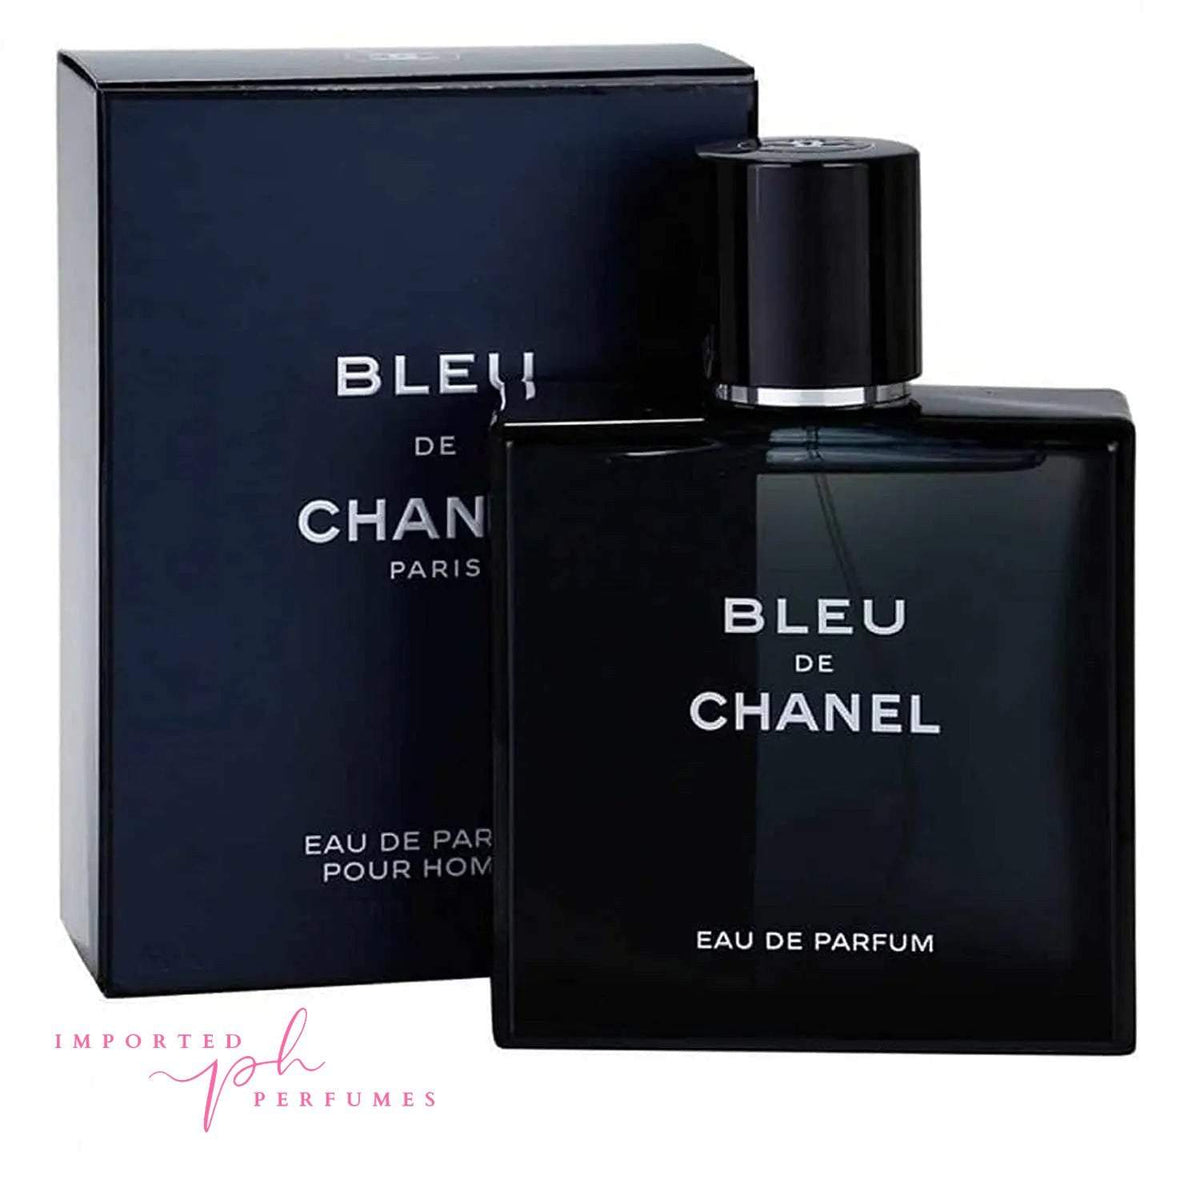 2018 Bleu de Chanel Parfum  Fragrance Review — MEN'S STYLE BLOG